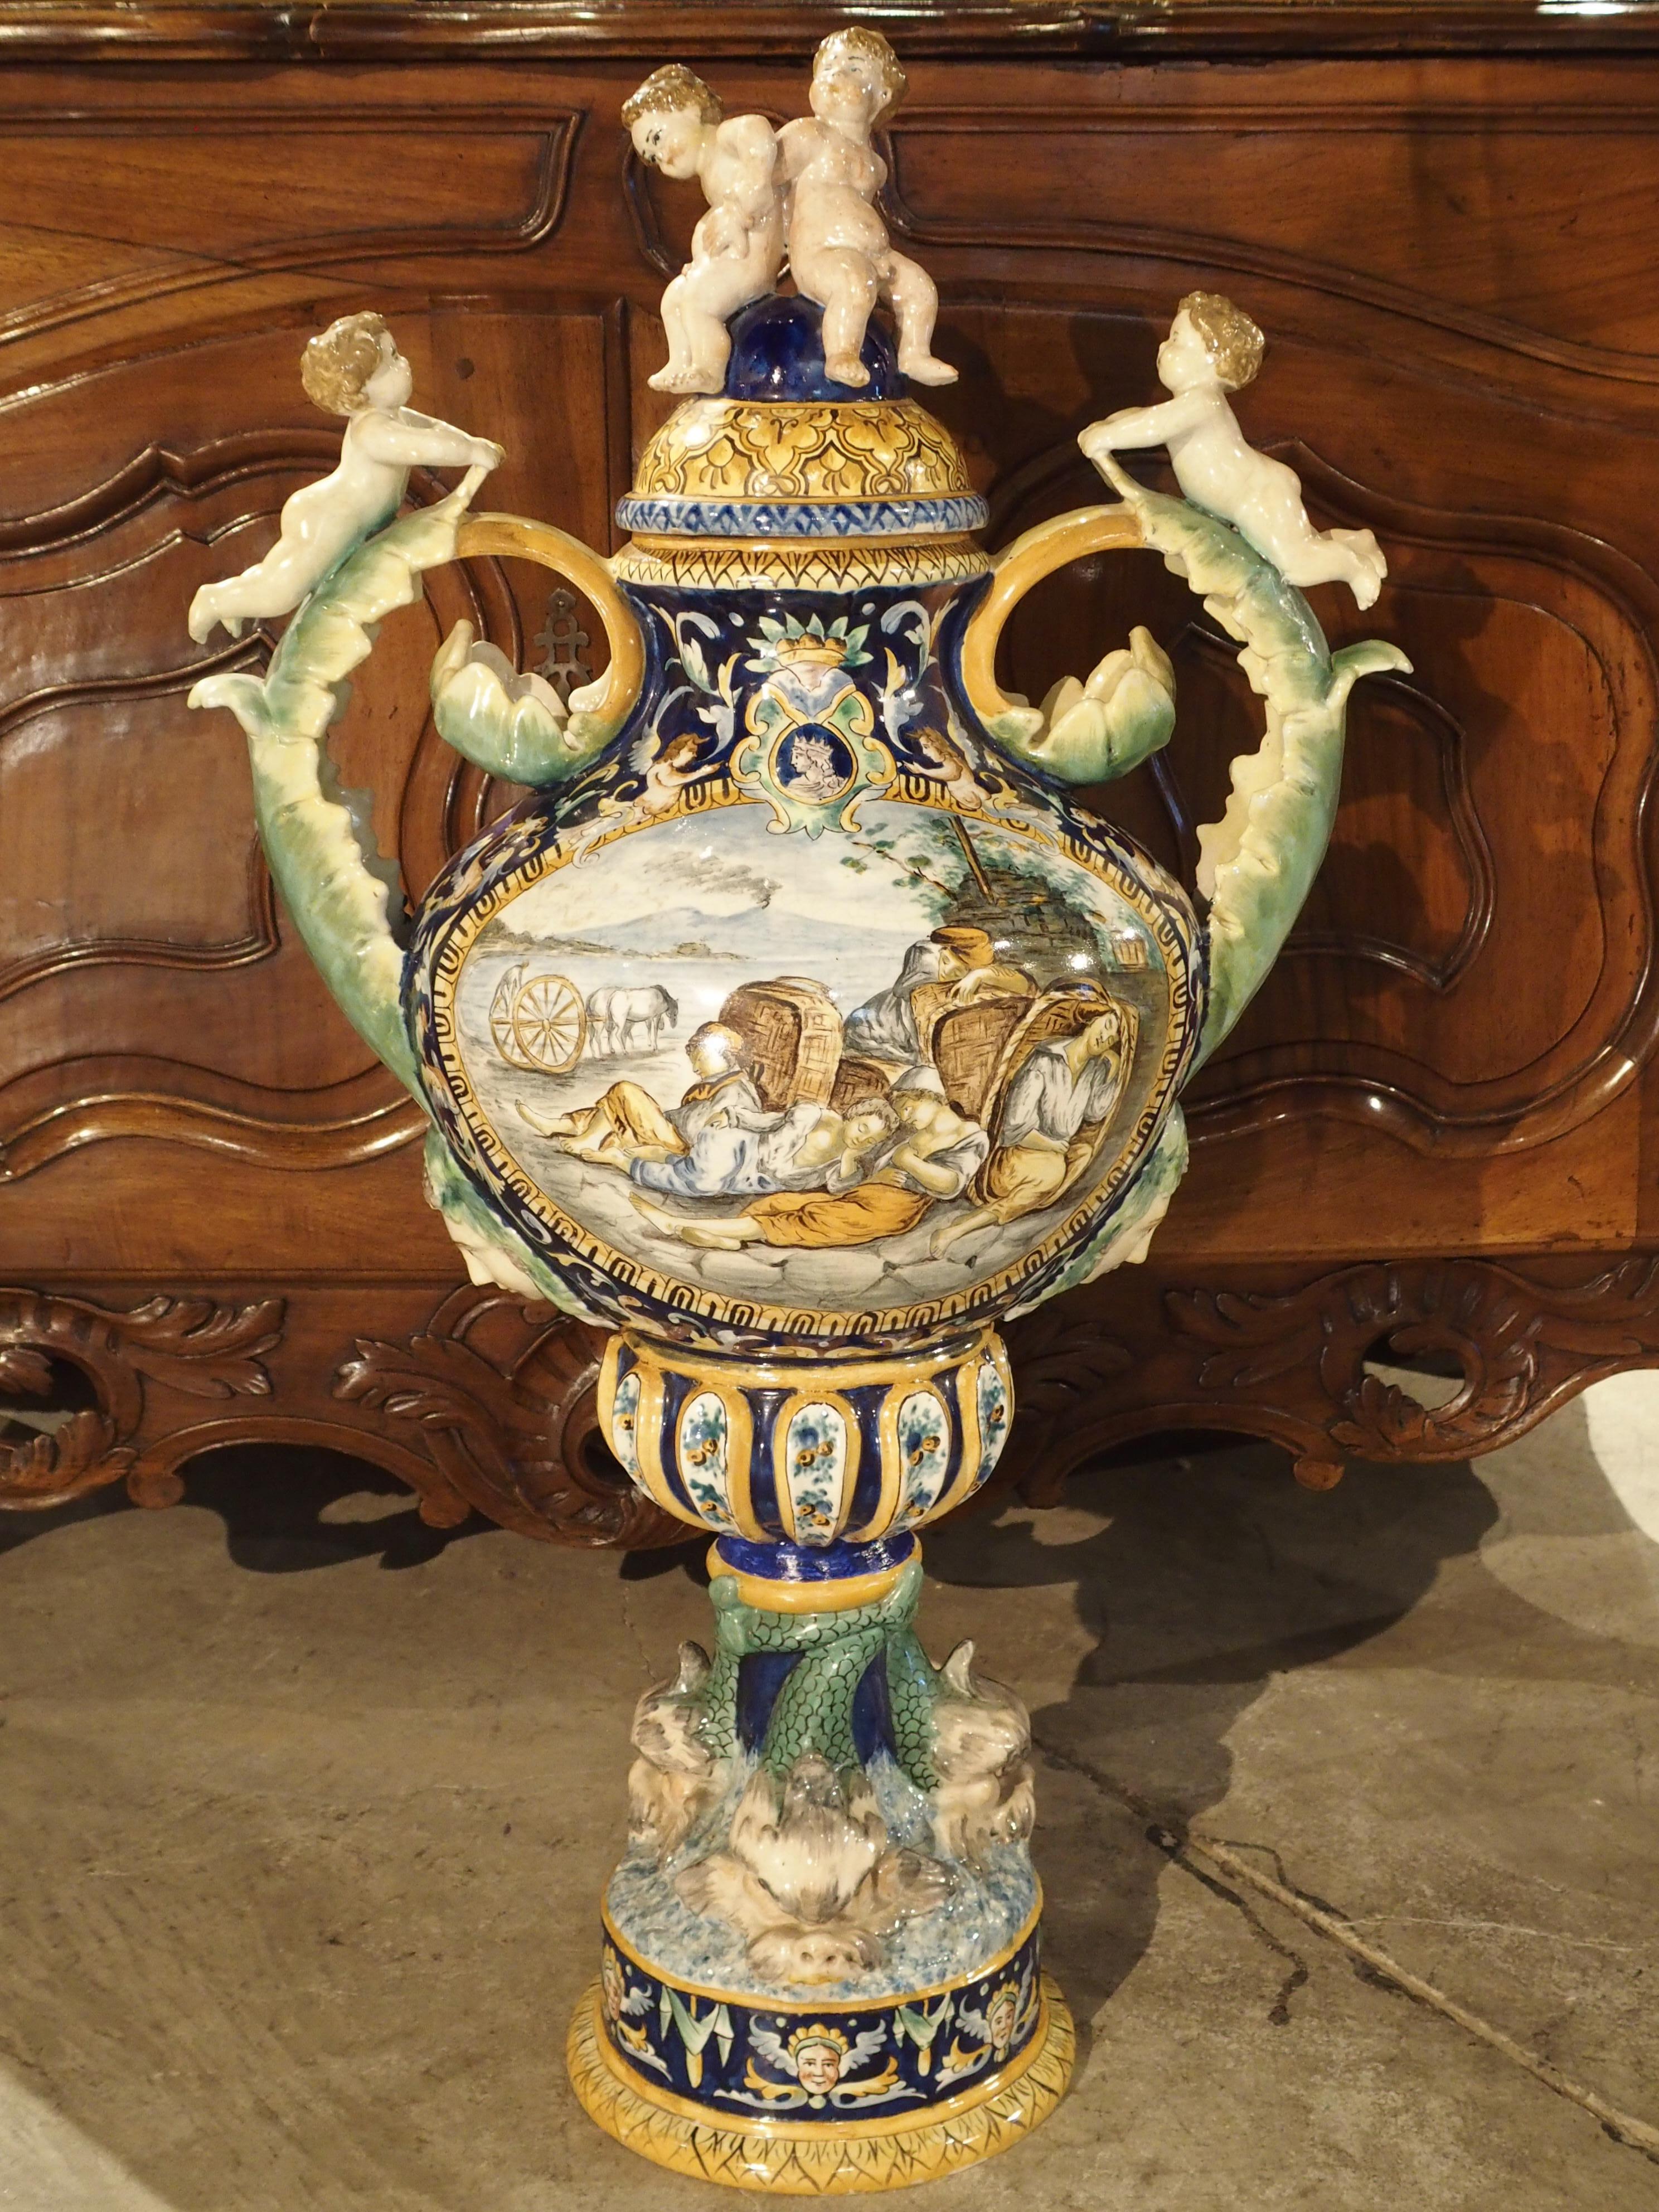 Originaire d'Italie, cette grande urne en majolique peinte à la main date de la fin des années 1800. Au sommet se trouvent deux putti assis sur le couvercle et deux autres putti couchés sur le ventre sur les poignées en forme de feuilles d'acanthe